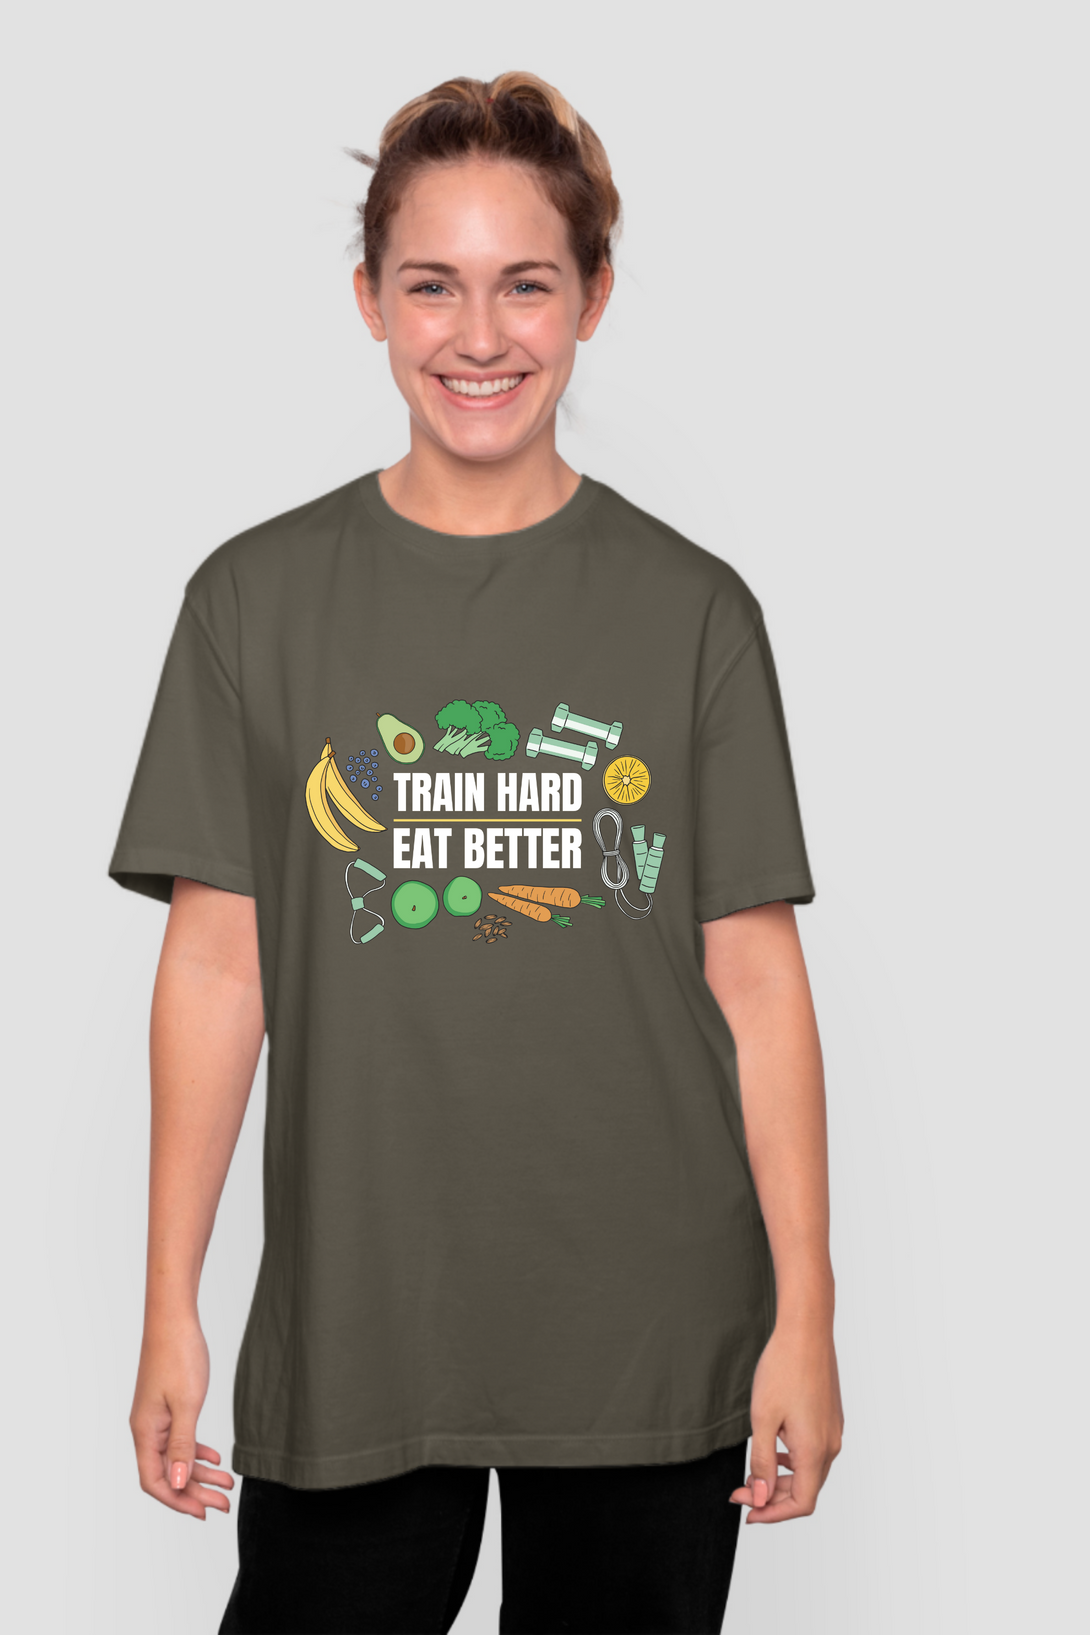 Train Hard, Eat Better Printed Oversized T-Shirt For Women - WowWaves - 9